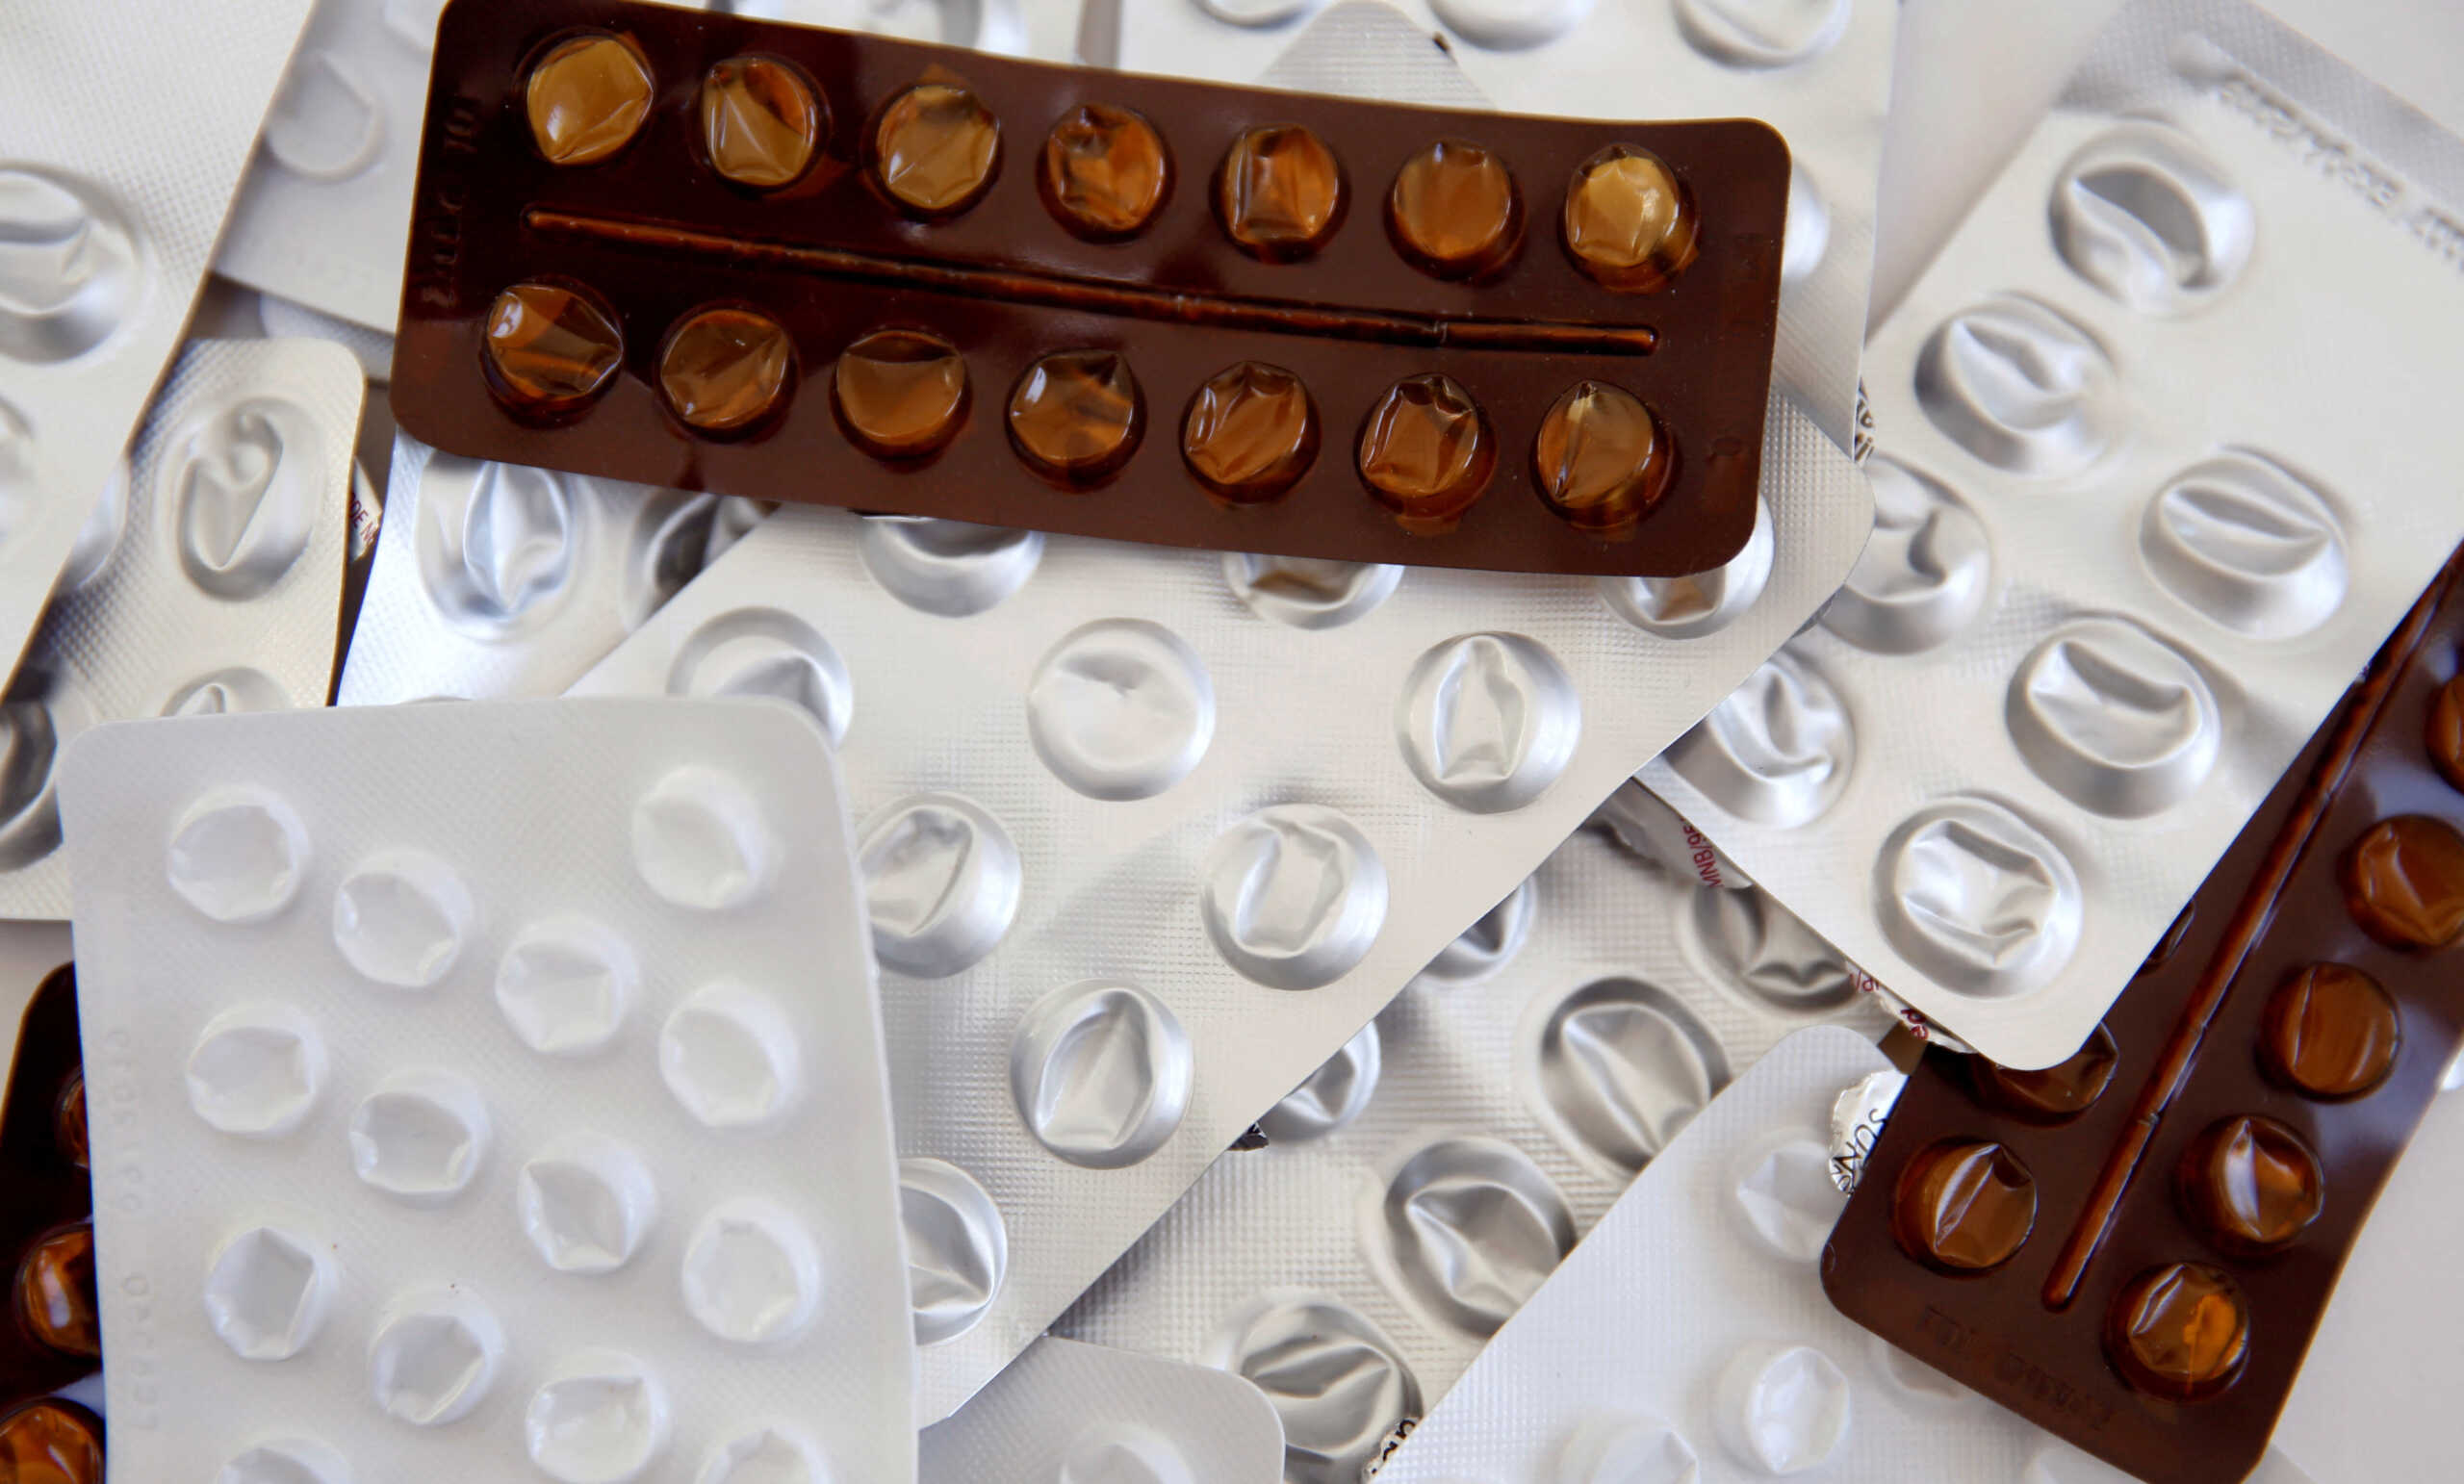 Φαρμακαποθηκάριοι προς ΕΟΦ: 12 ερωτήματα για τις ελλείψεις και τις παράλληλες εξαγωγές